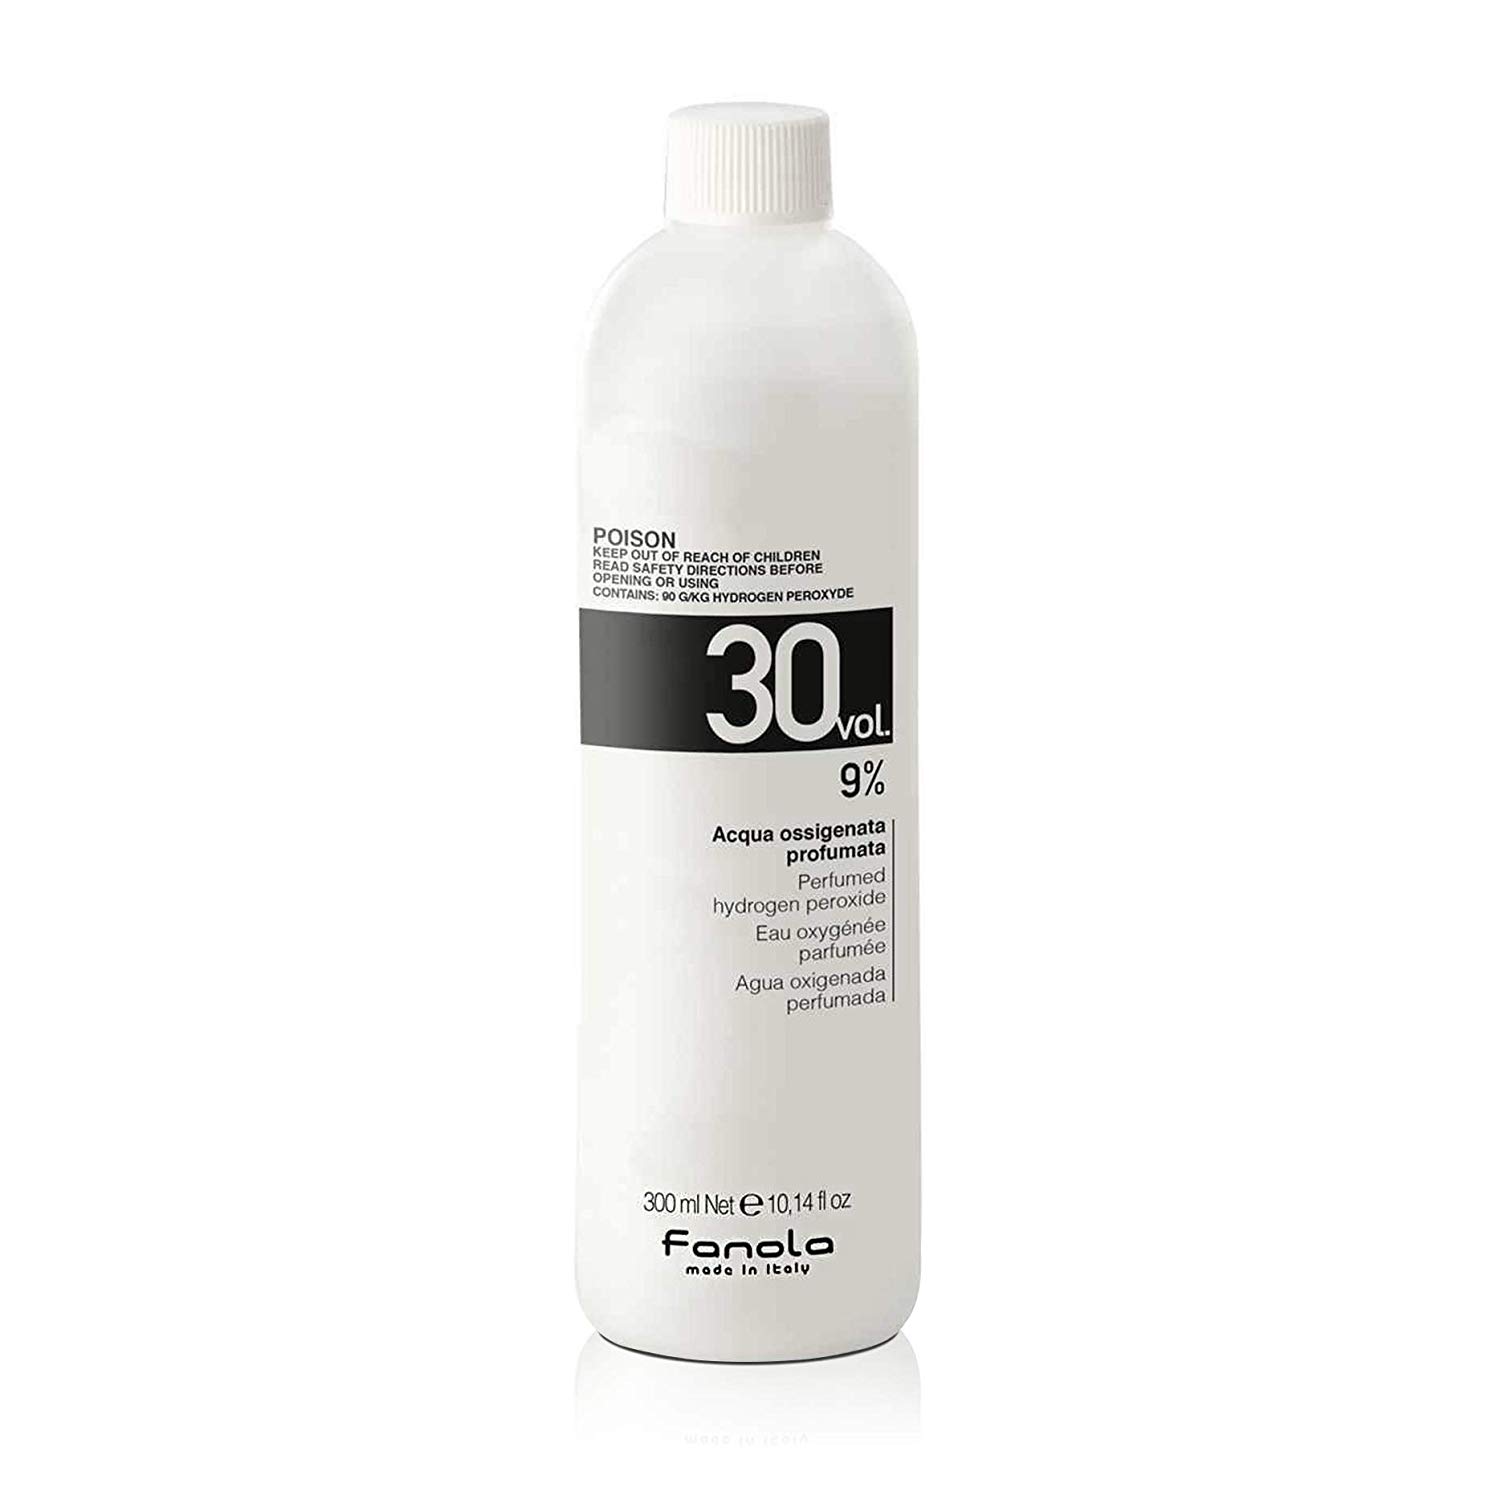 FANOLA Hydrogén-Peroxid 30 VOL. 9% 300 ml